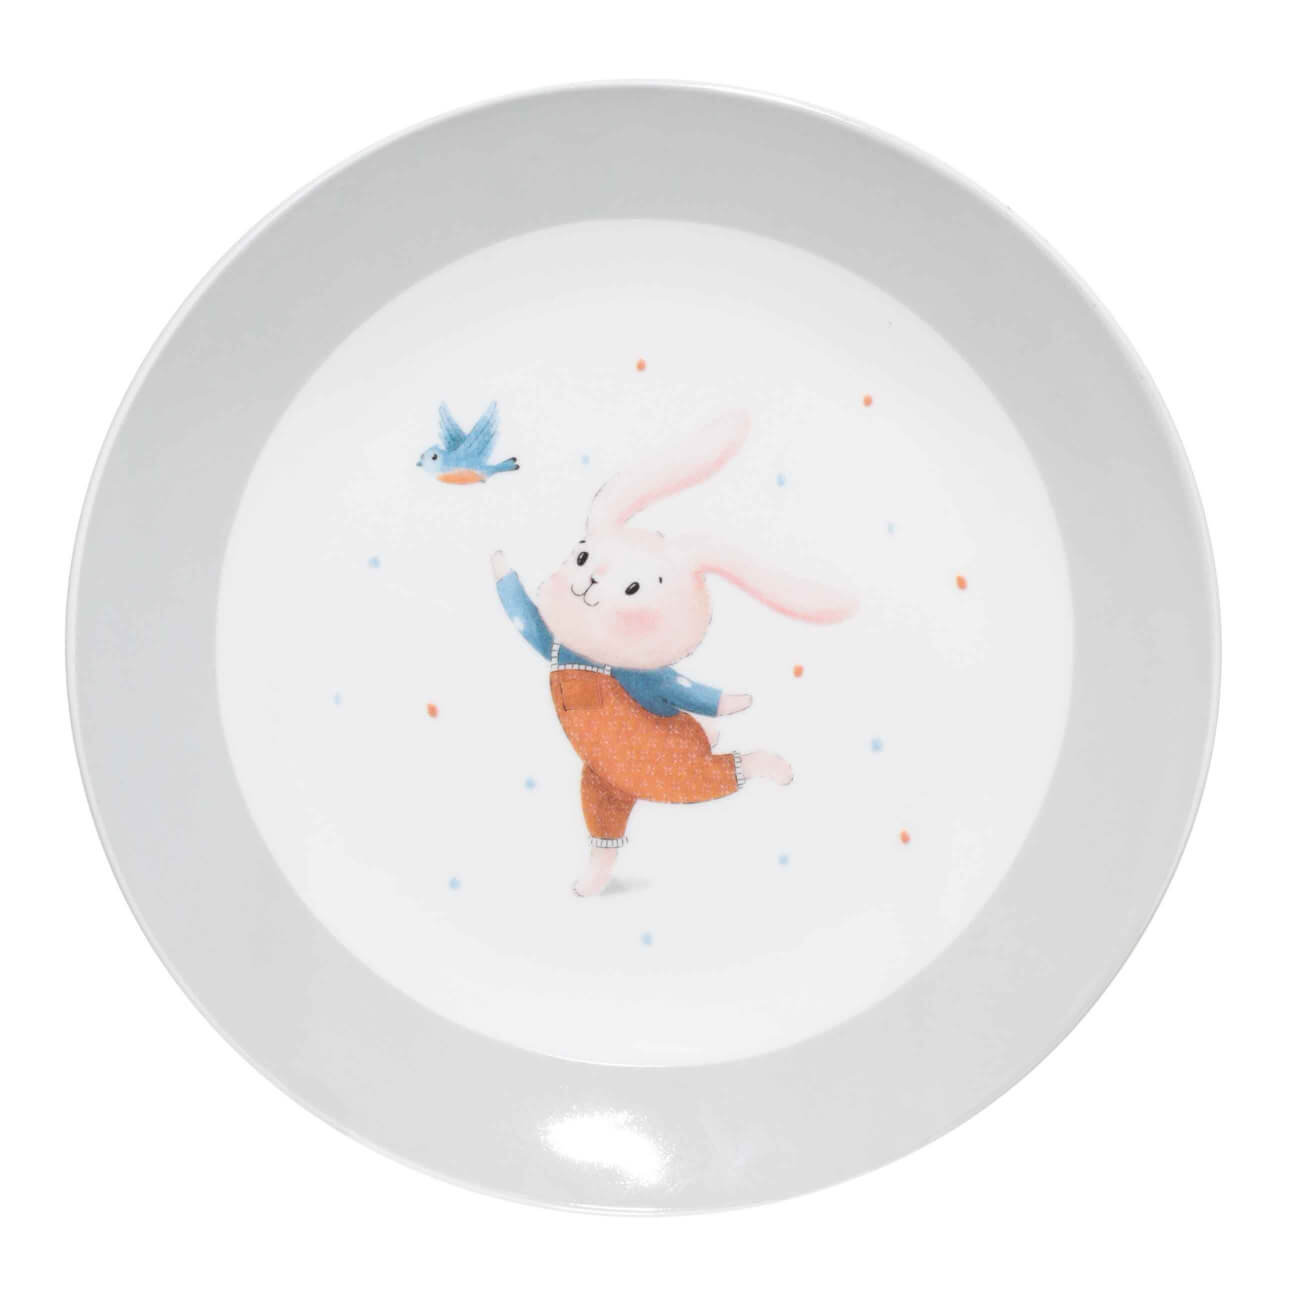 Тарелка закусочная, детская, 19 см, фарфор N, бело-серая, Кролик с птицей, Ideas life тарелка dudson камелот 22 9 см